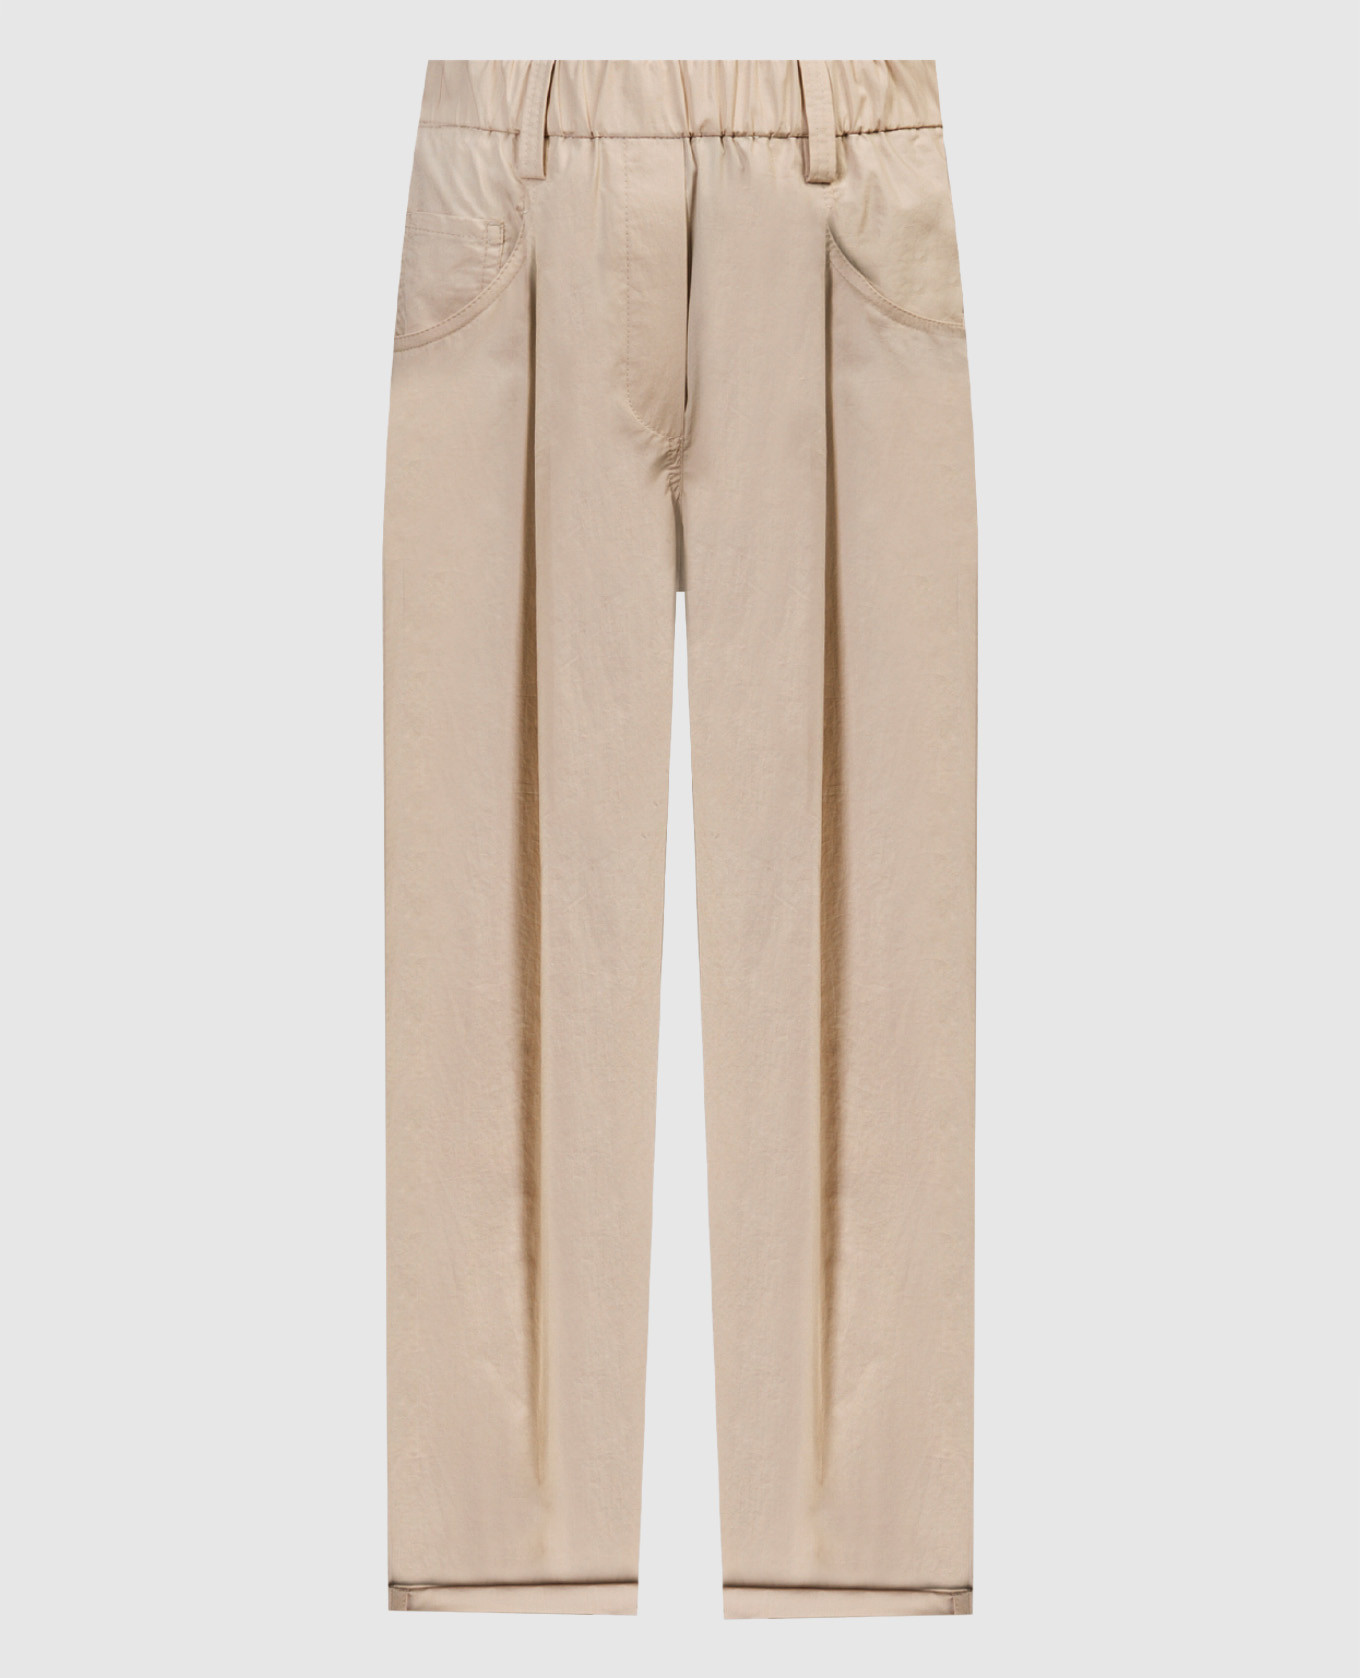 Бежевые брюки с цепочкой мониль из эколонуни